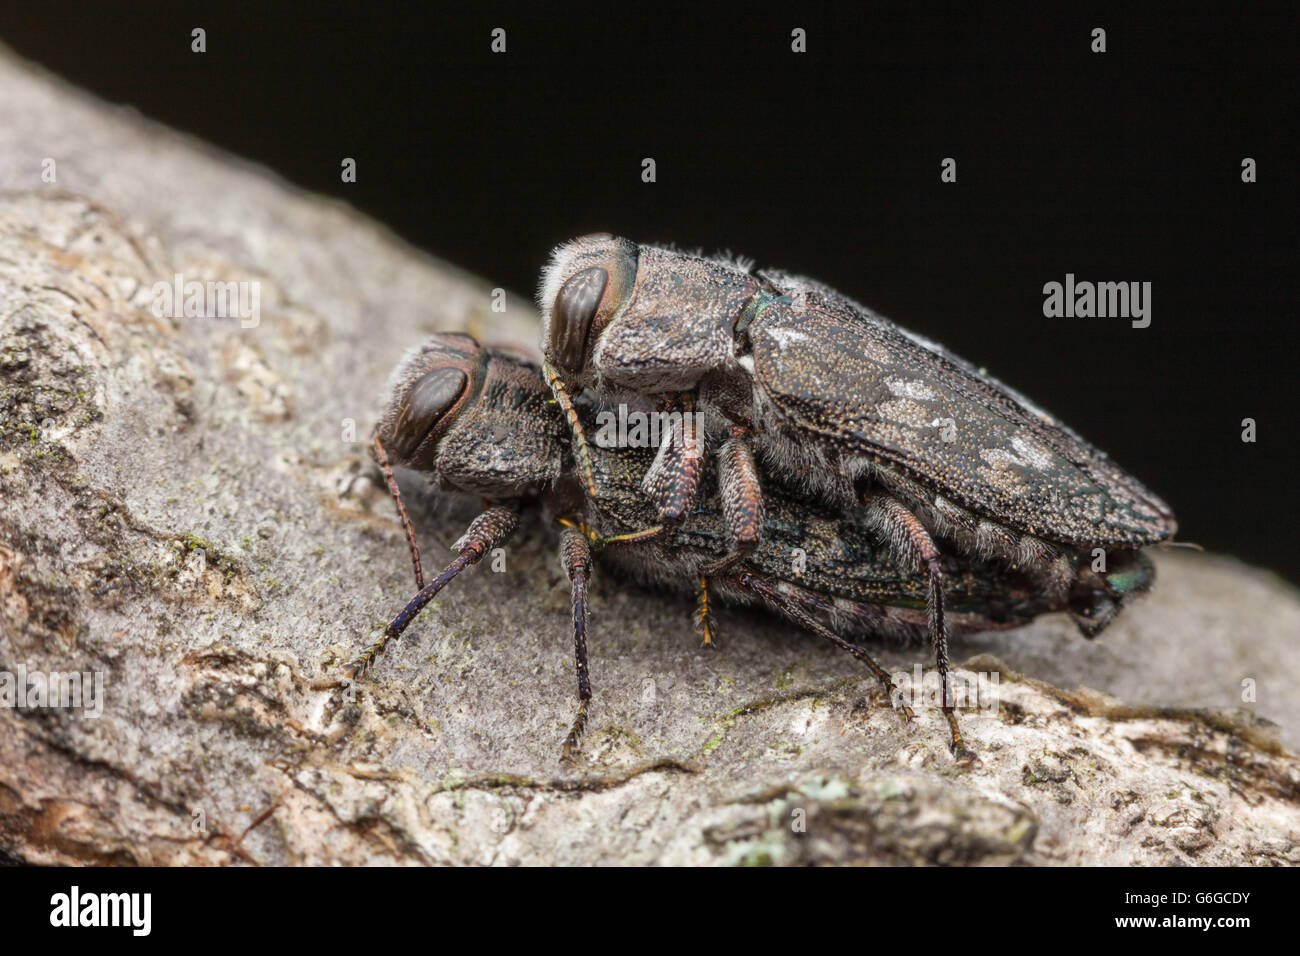 Un par de escarabajos perforadores de madera metálicos (grupo de especies de Chrysobothris femorata) se aparean en una rama de un roble caído. Foto de stock